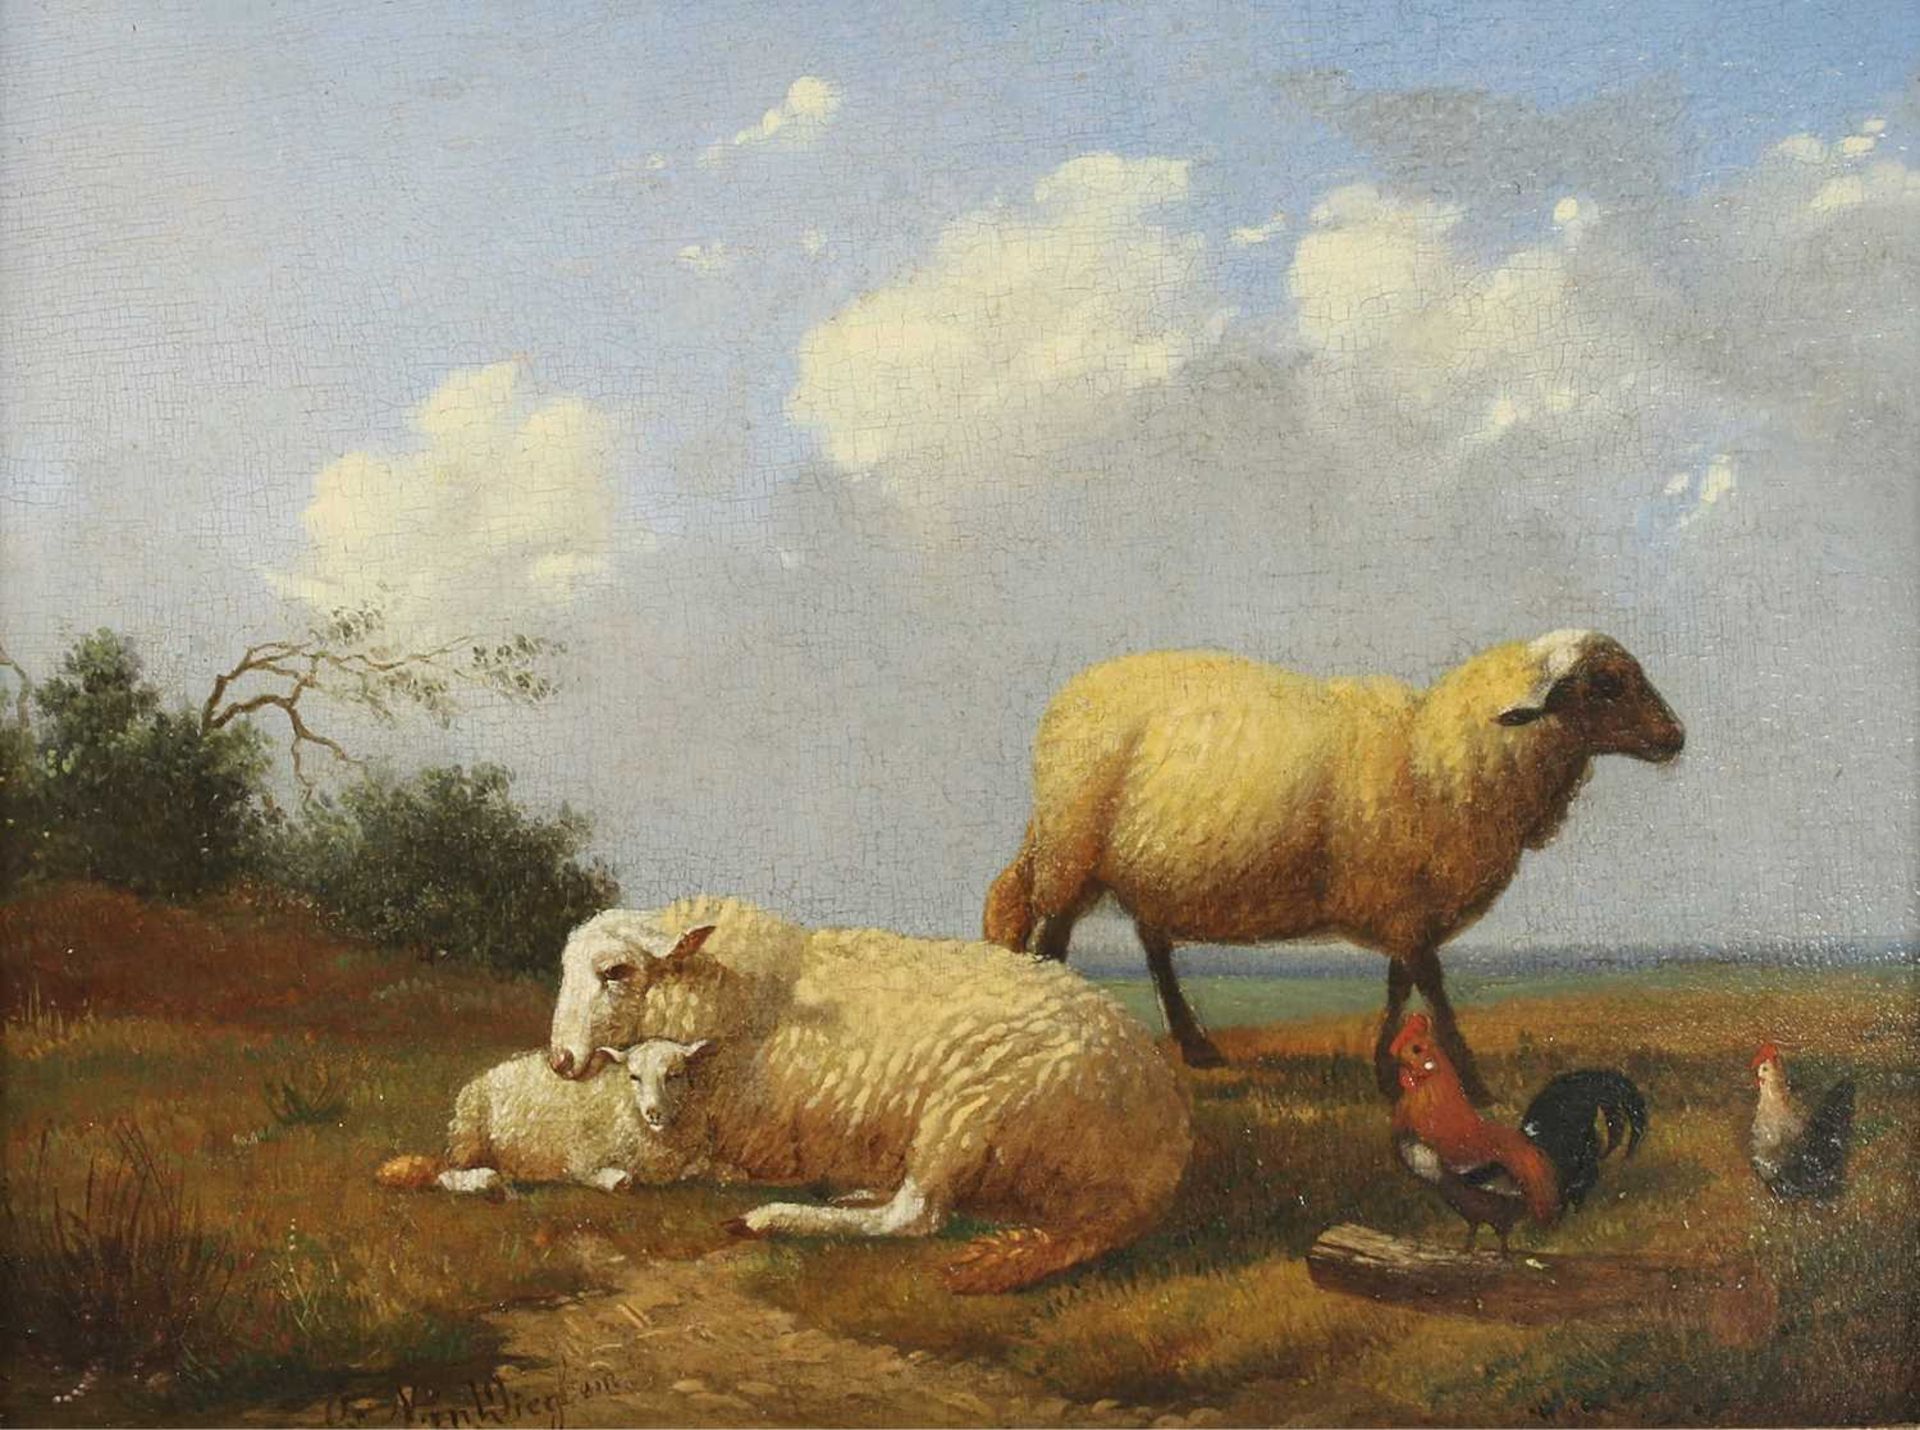 Jacob van Dieghem (Dutch, 1843-1885)